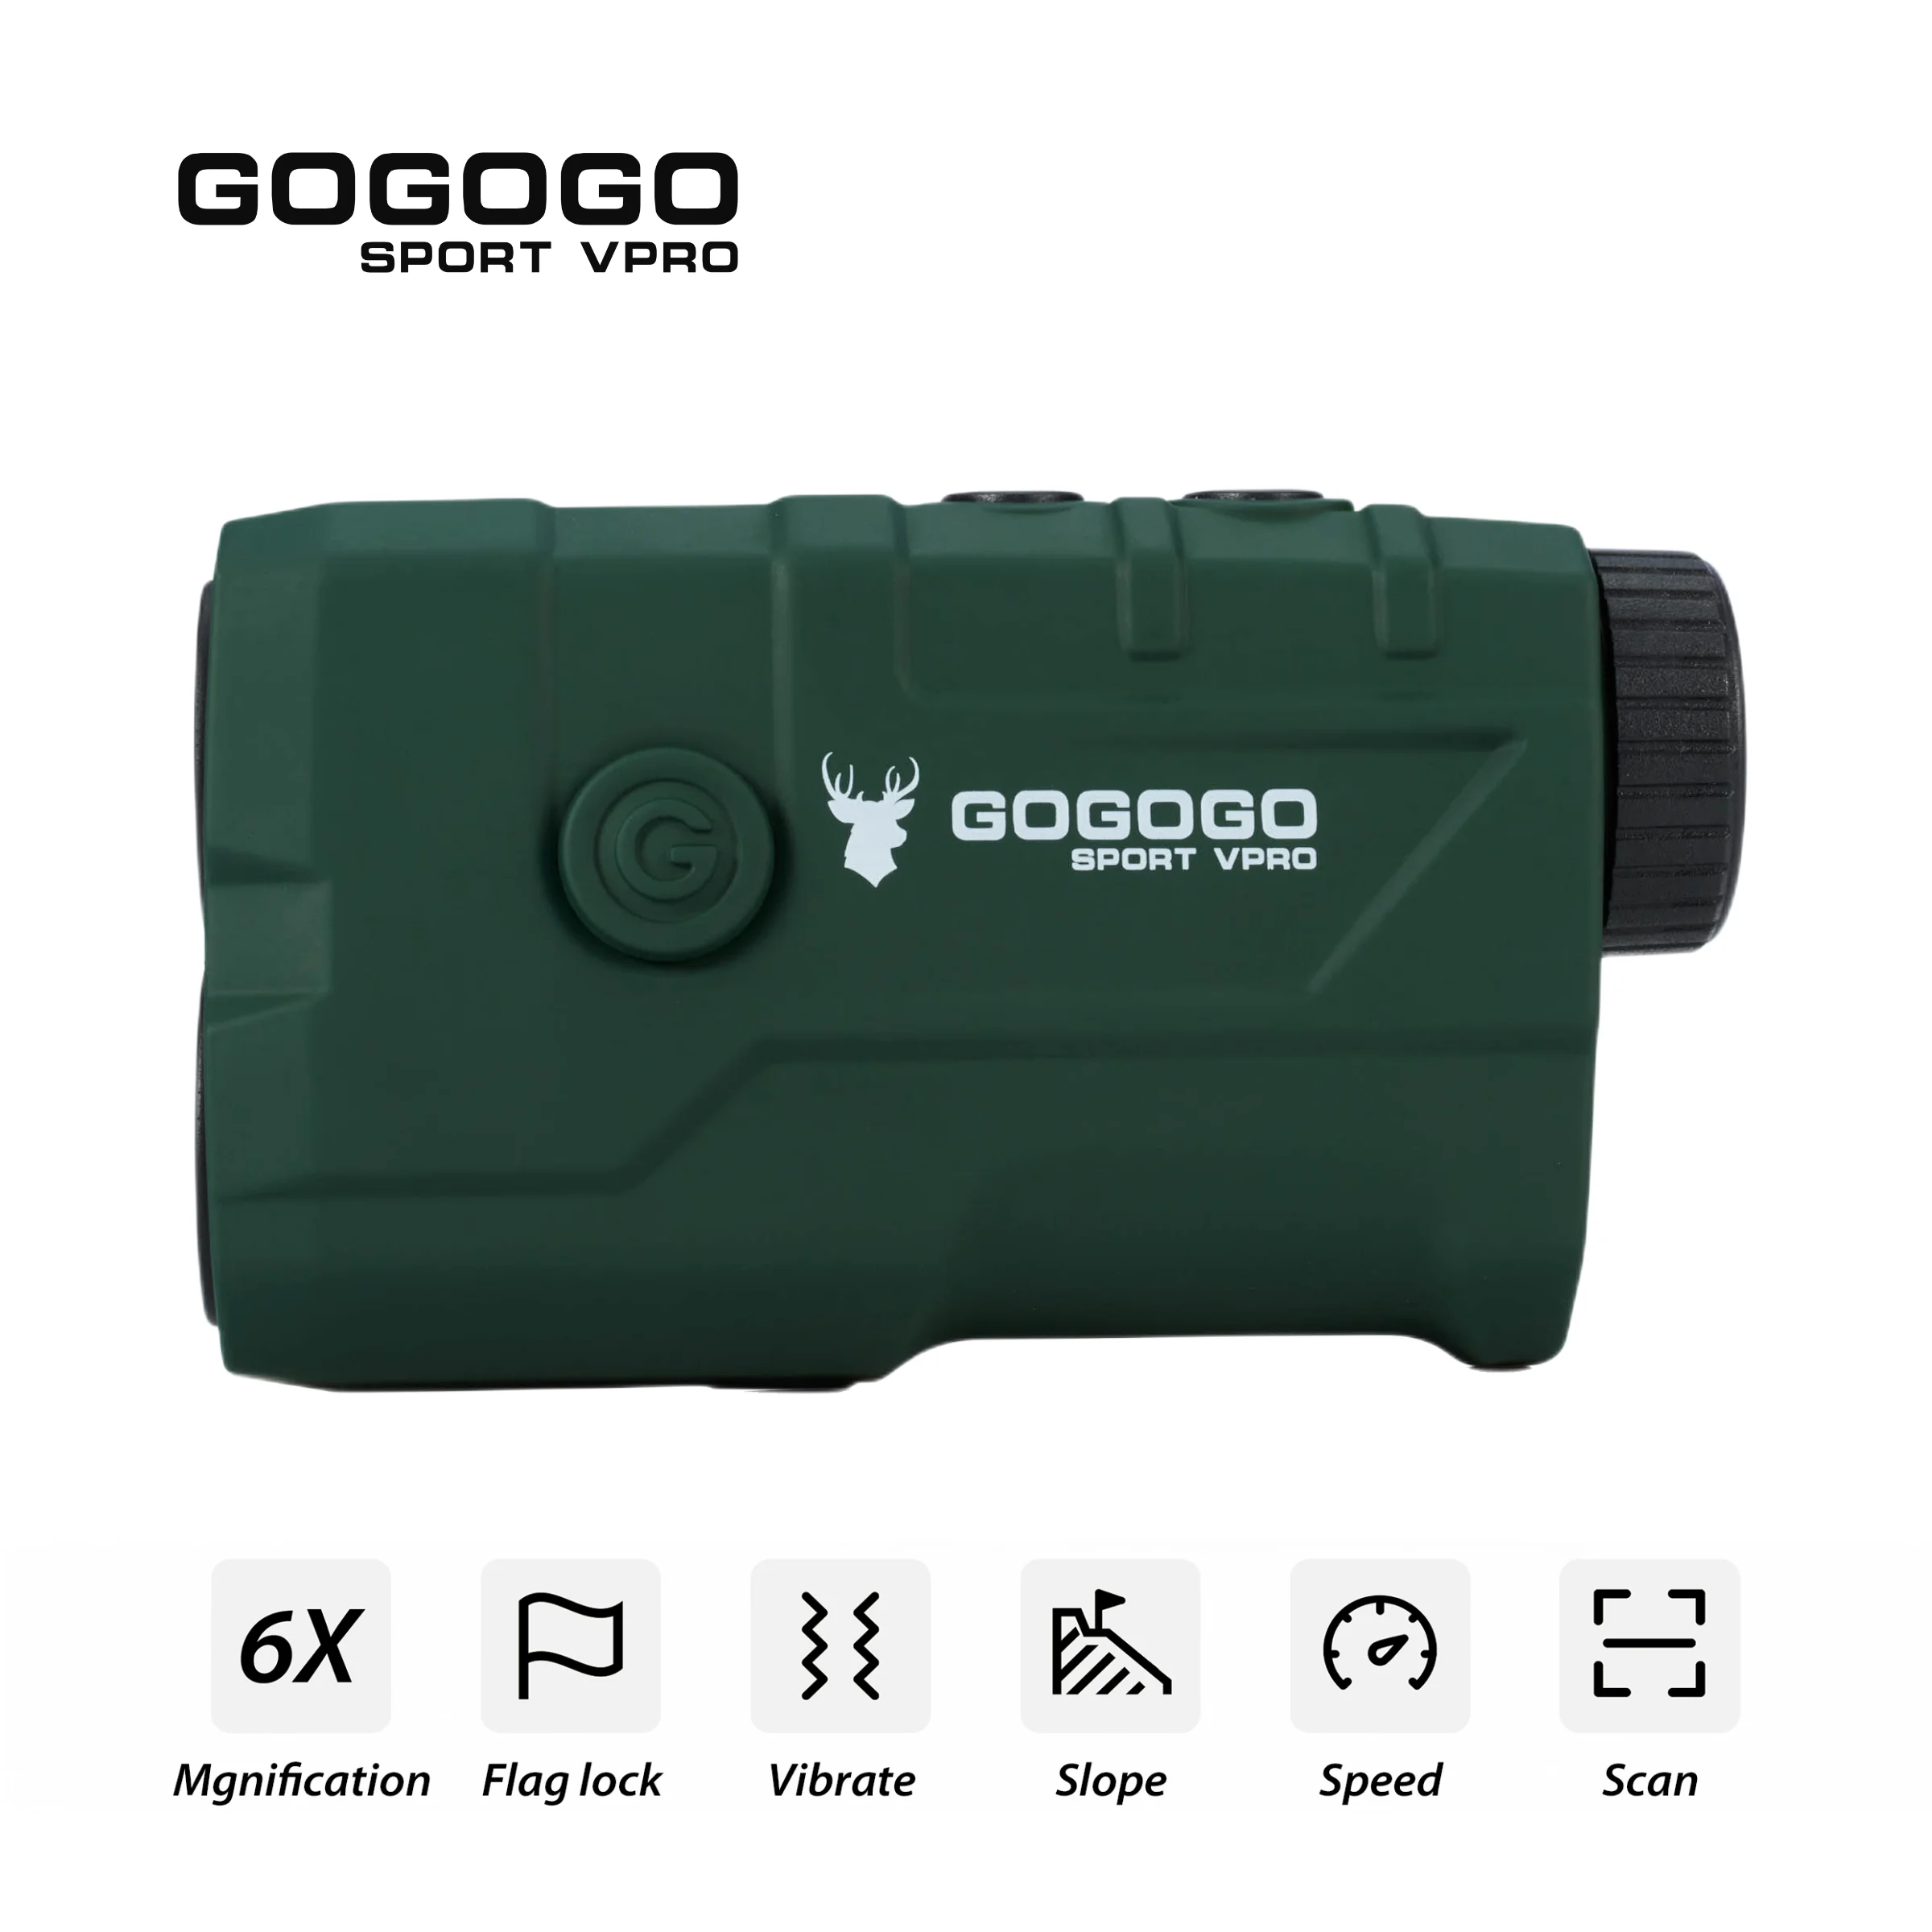 Gogogo 스포츠 Vpro 거리계, 사냥 및 골프용, 적색 디스플레이 슬로프, 6X HD 렌즈, 충전식 레이저 거리 계량기 GS19B, 1000m